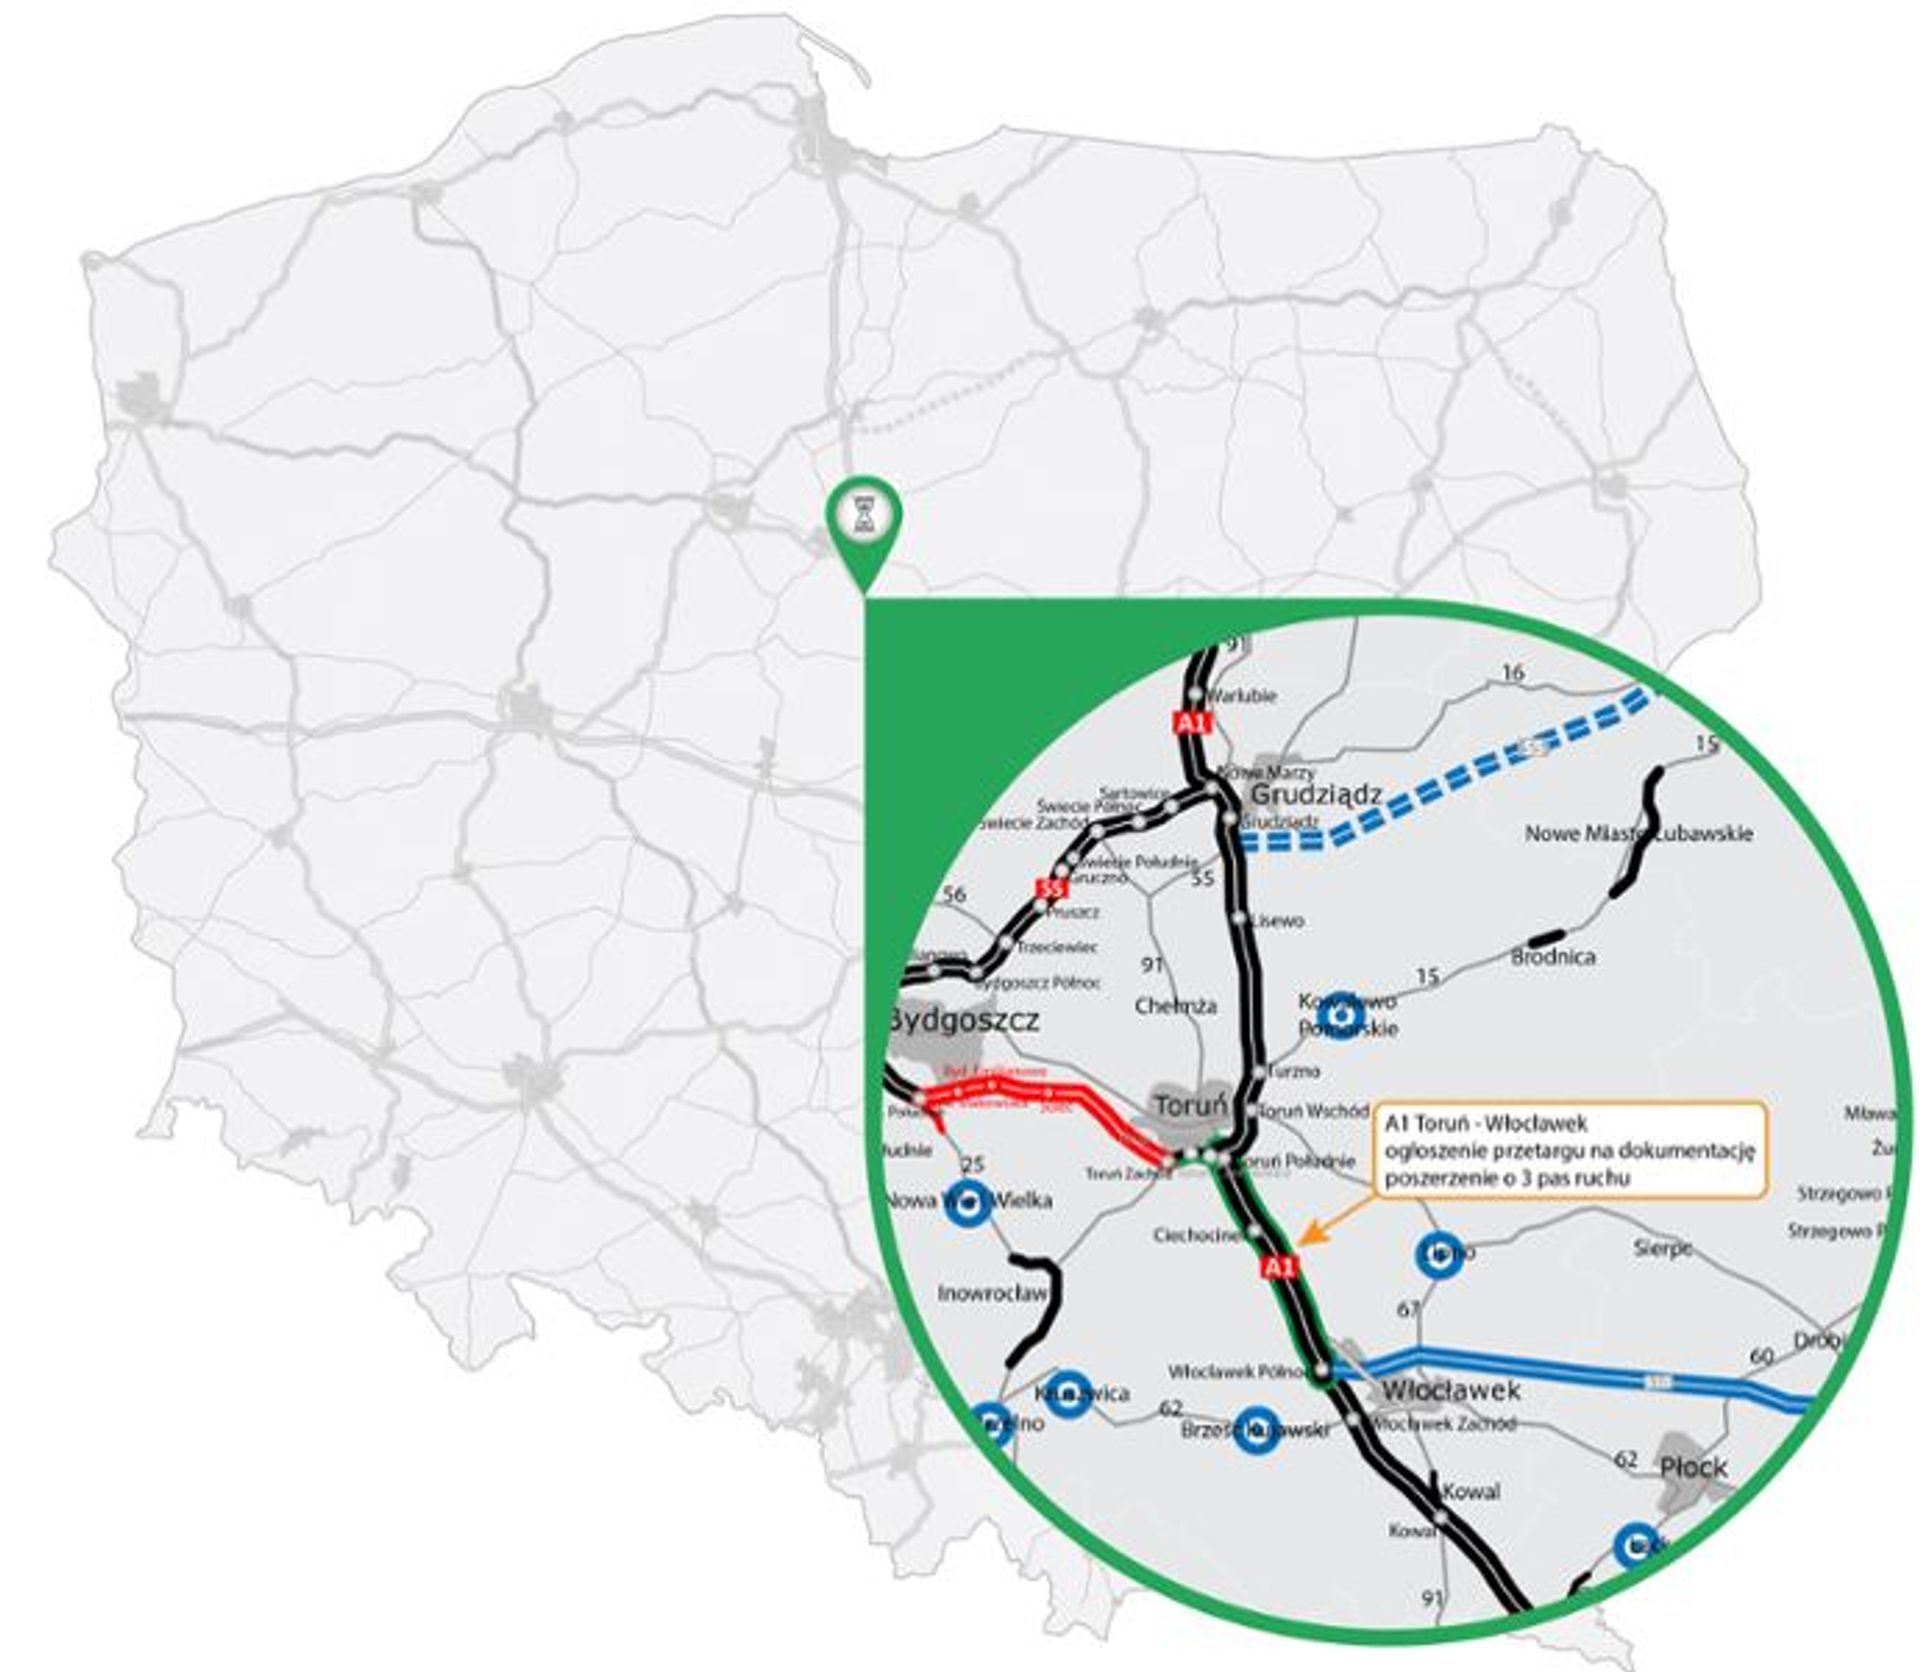 Ponownie ogłoszono przetarg na dokumentację dla poszerzenia autostrady A1 na odcinku Toruń - Włocławek